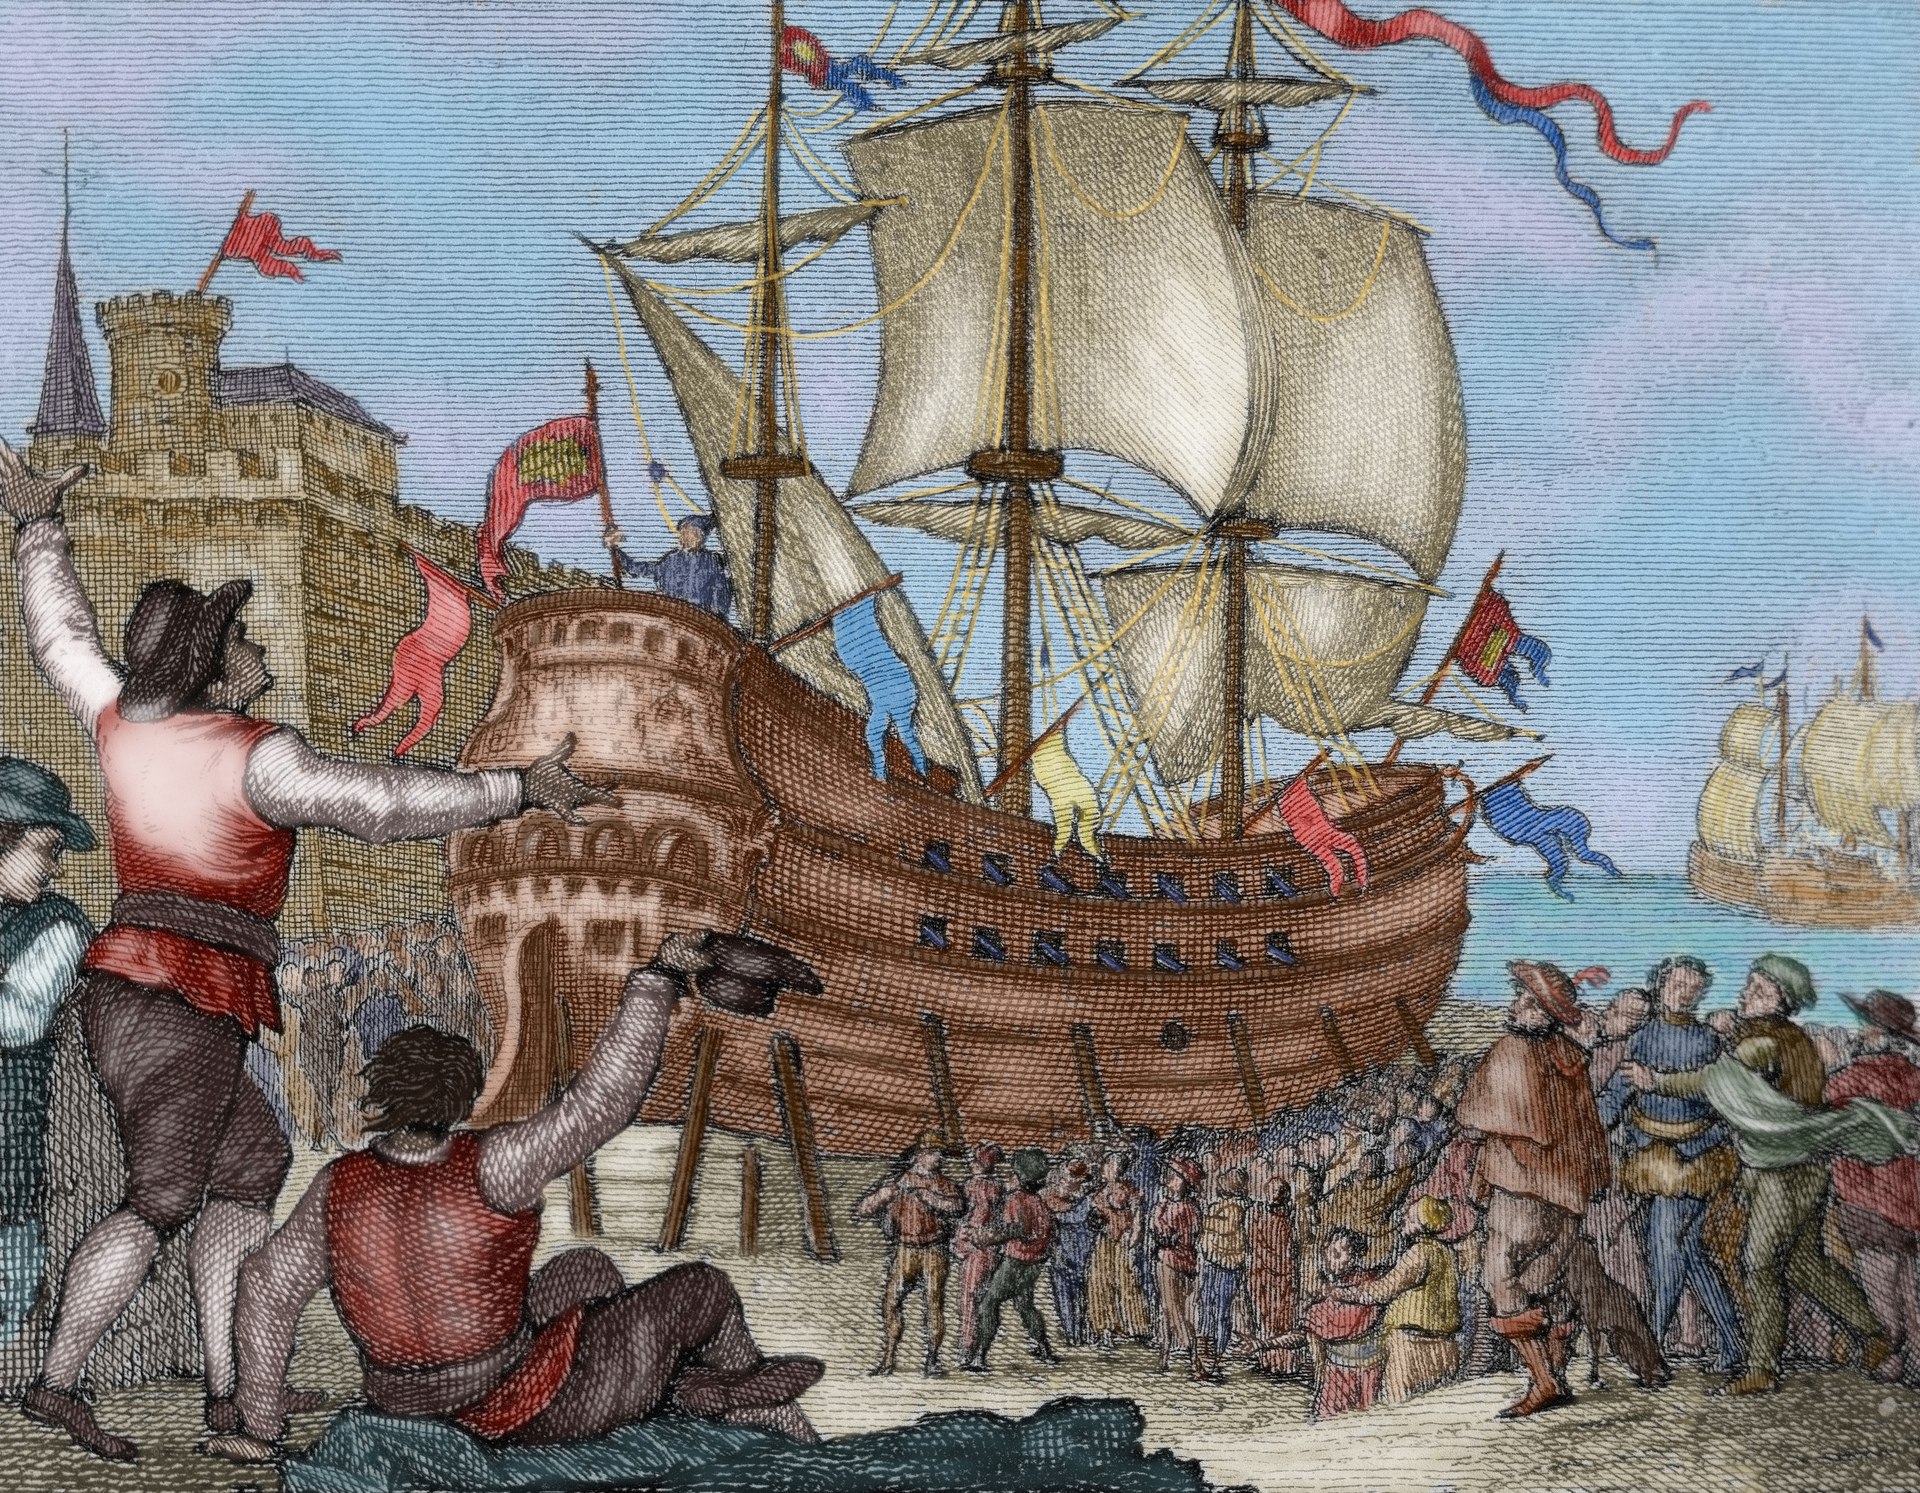 Почему героями новгородских были корабельщики мореплаватели. Кругосветное путешествие Хуан Себастьян Элькано. Путешествие Фернана Магеллана 1519-1522.